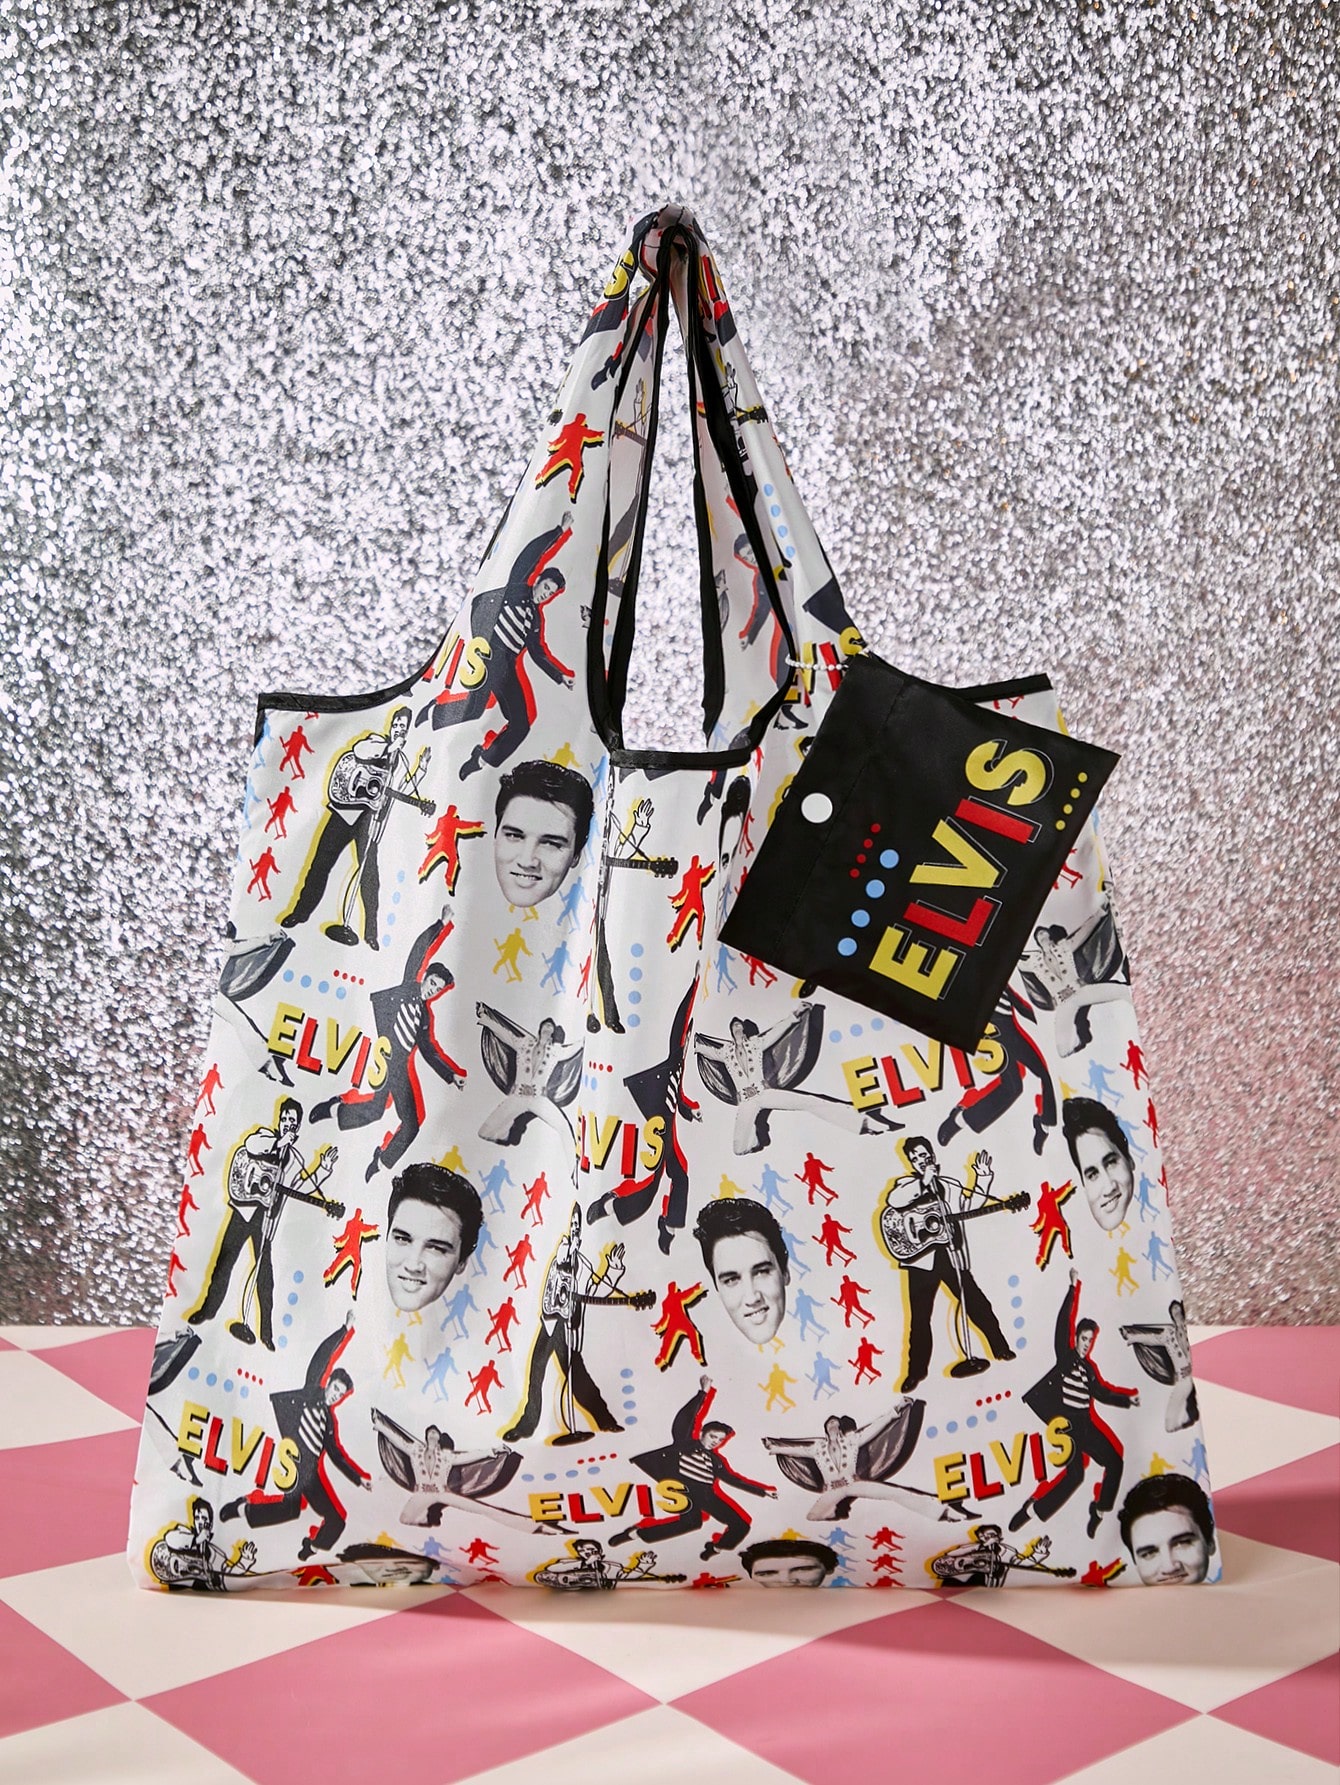 виниловые пластинки rca elvis presley elvis presley lp Складная портативная сумка для покупок SHEIN Elvis Presley Collaboration, многоцветный